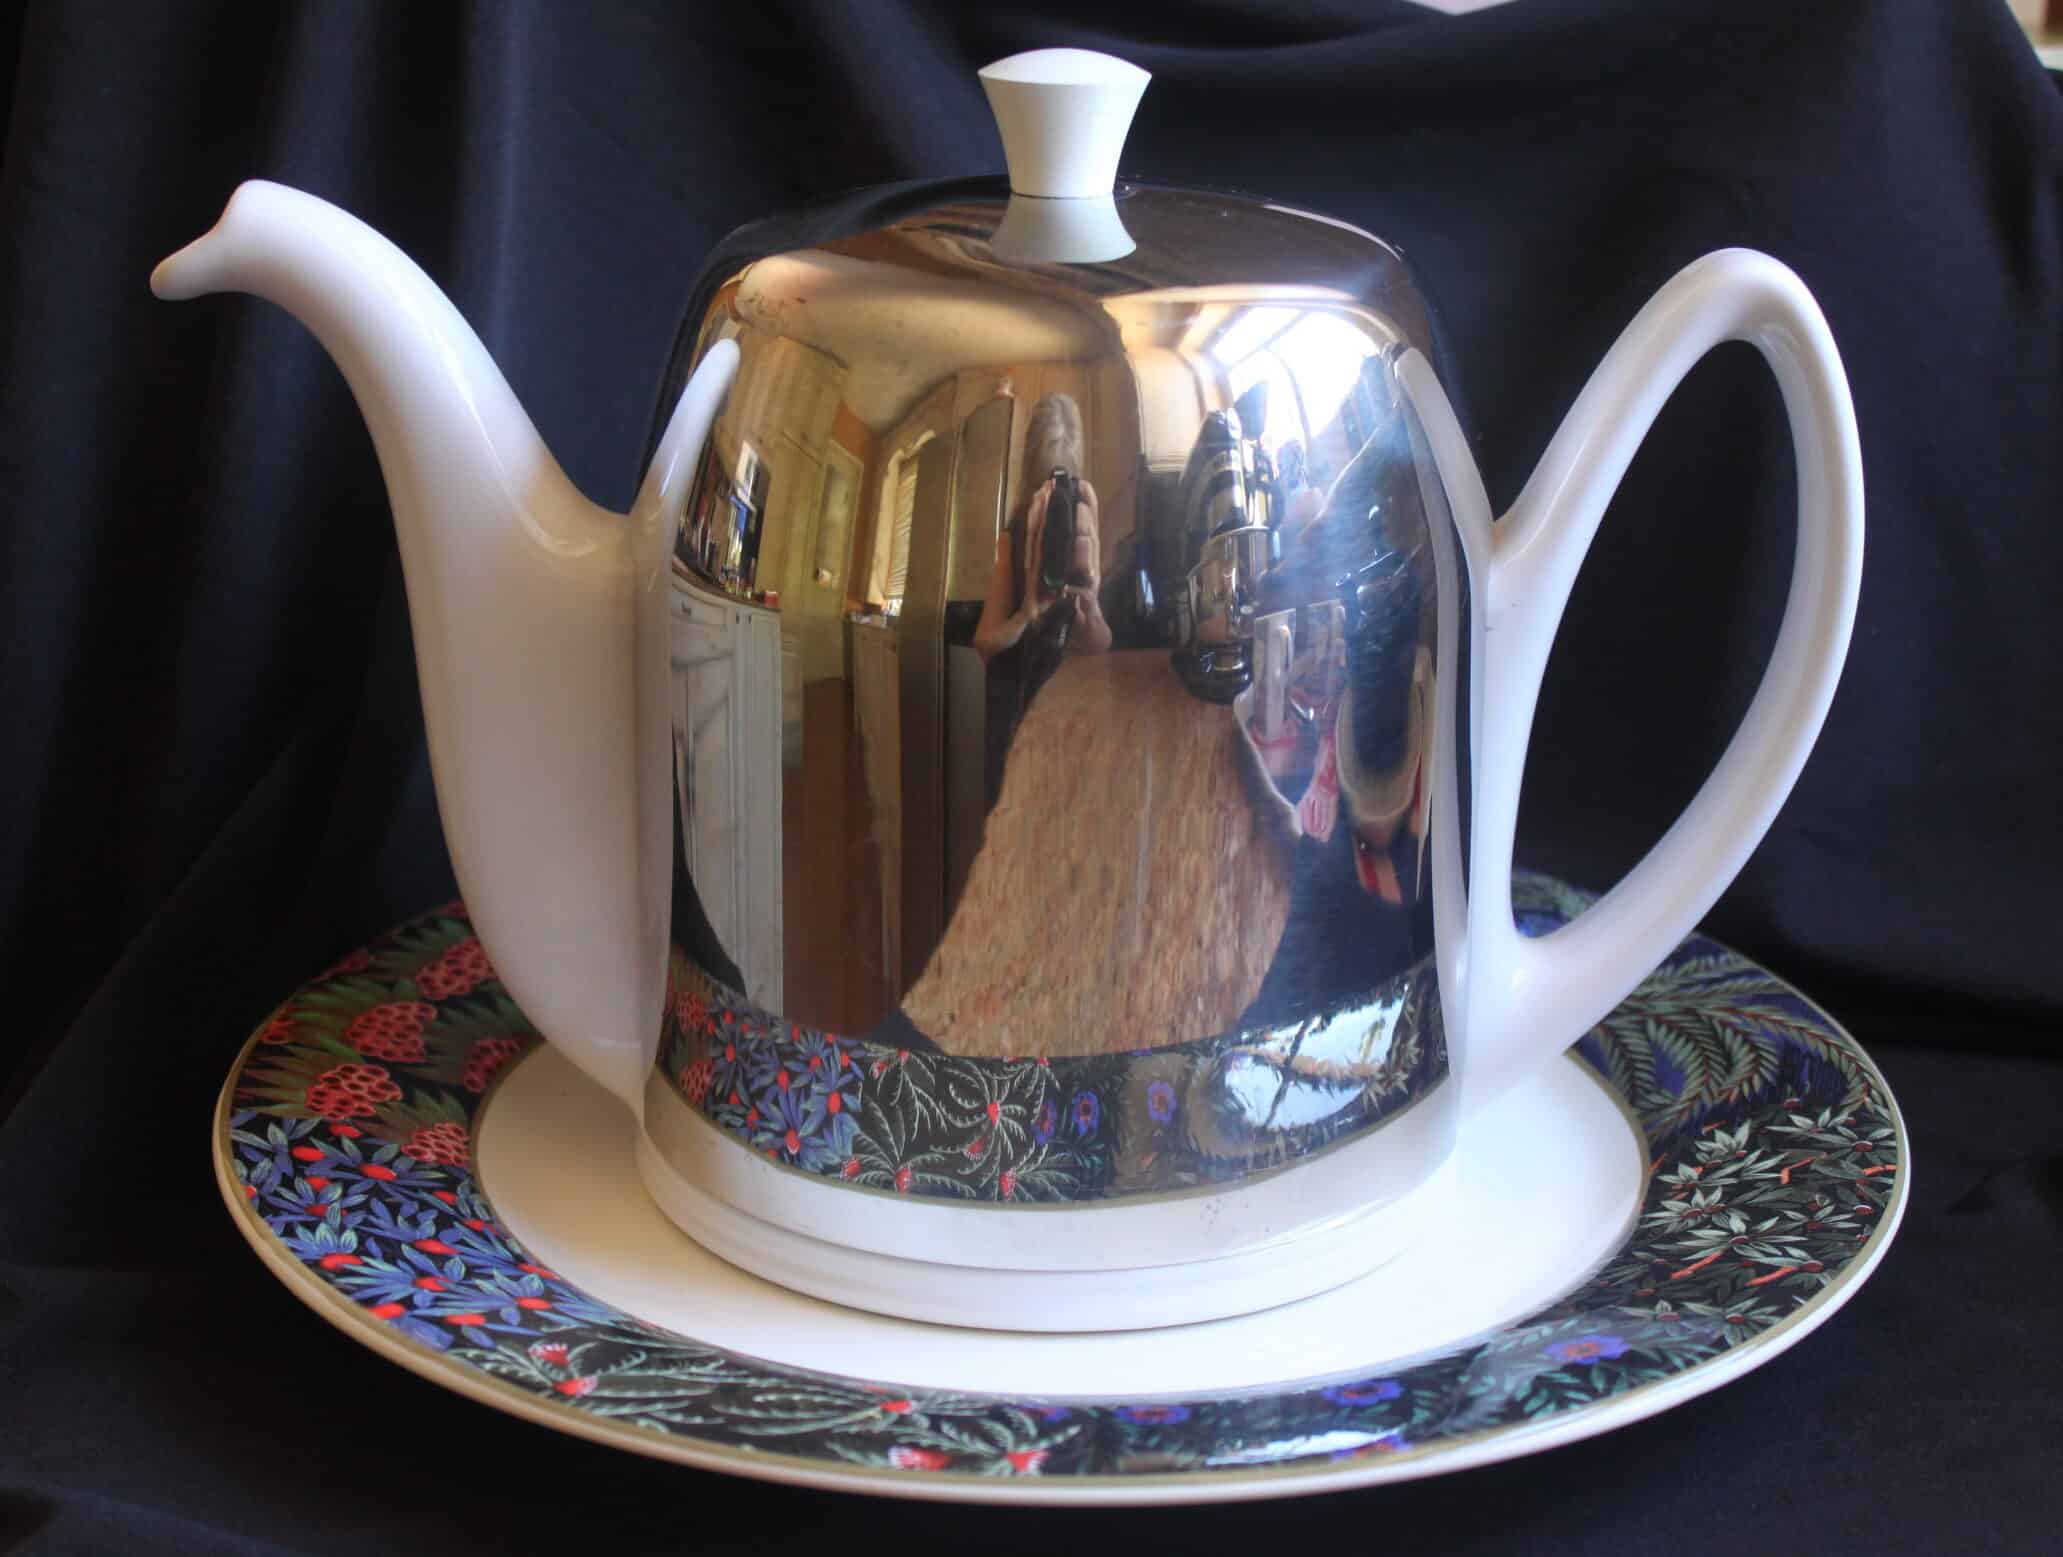 Degrenne teapot on porcelain plate